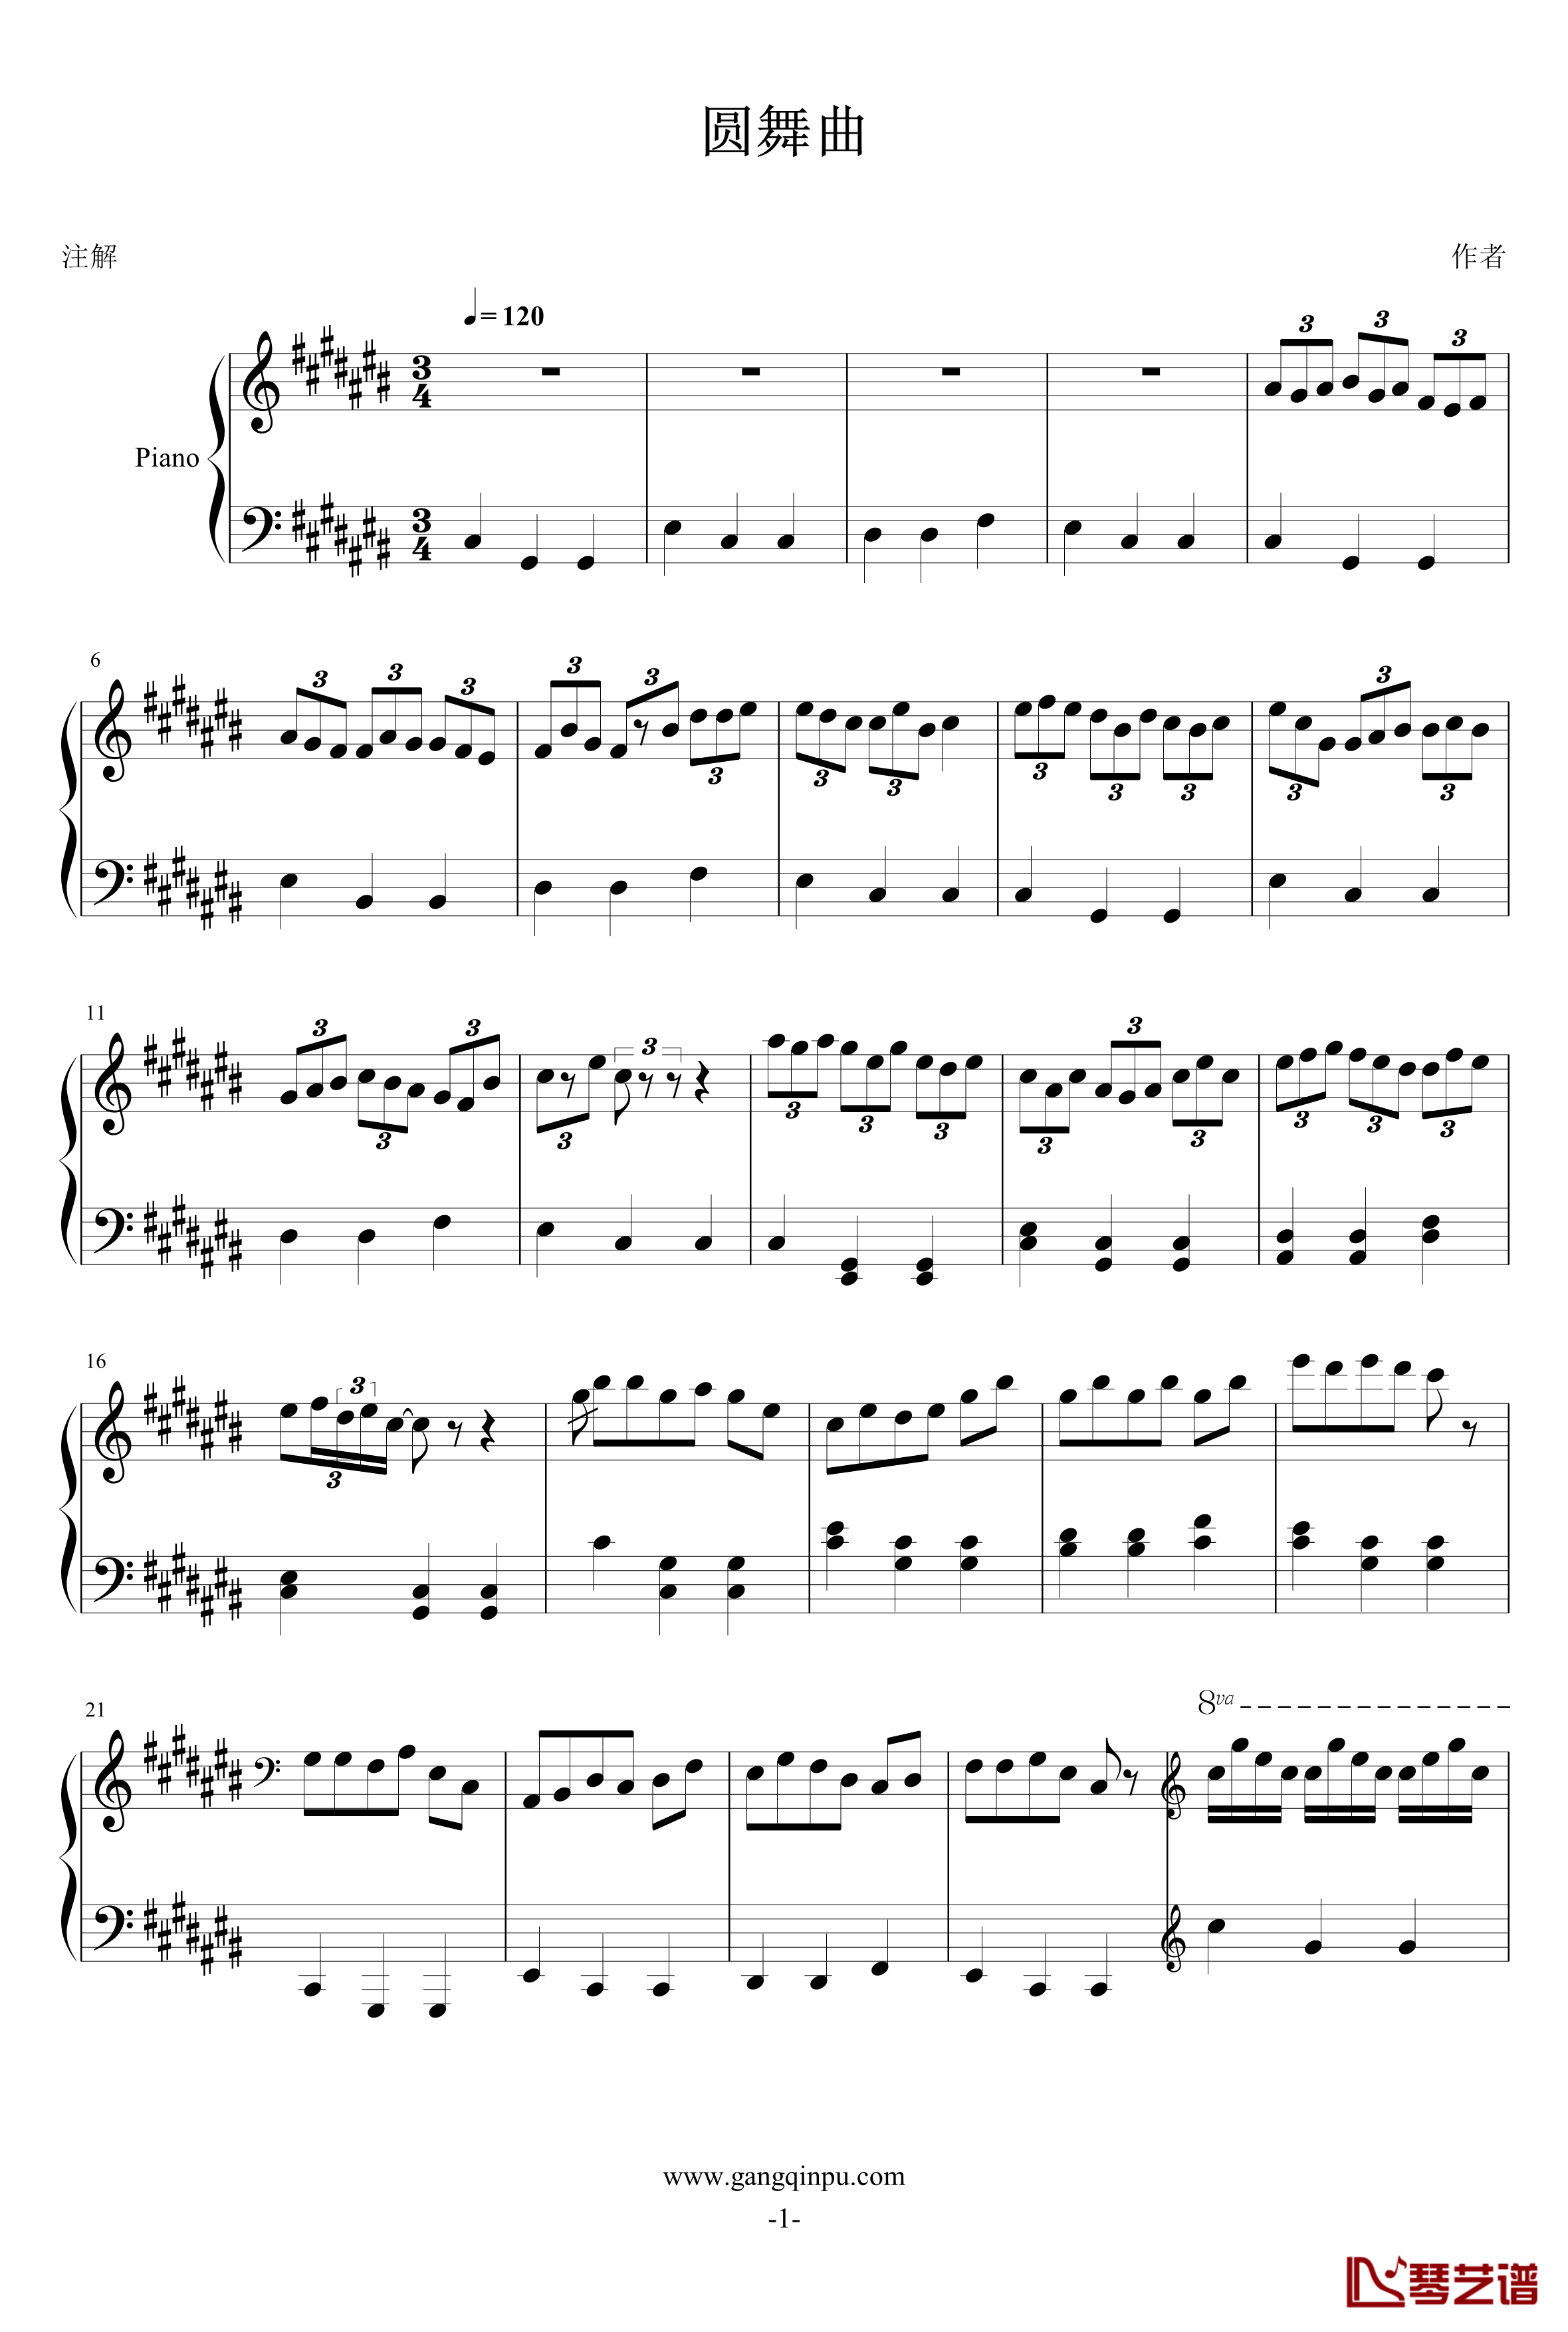 圆舞曲钢琴谱-lolaikia1